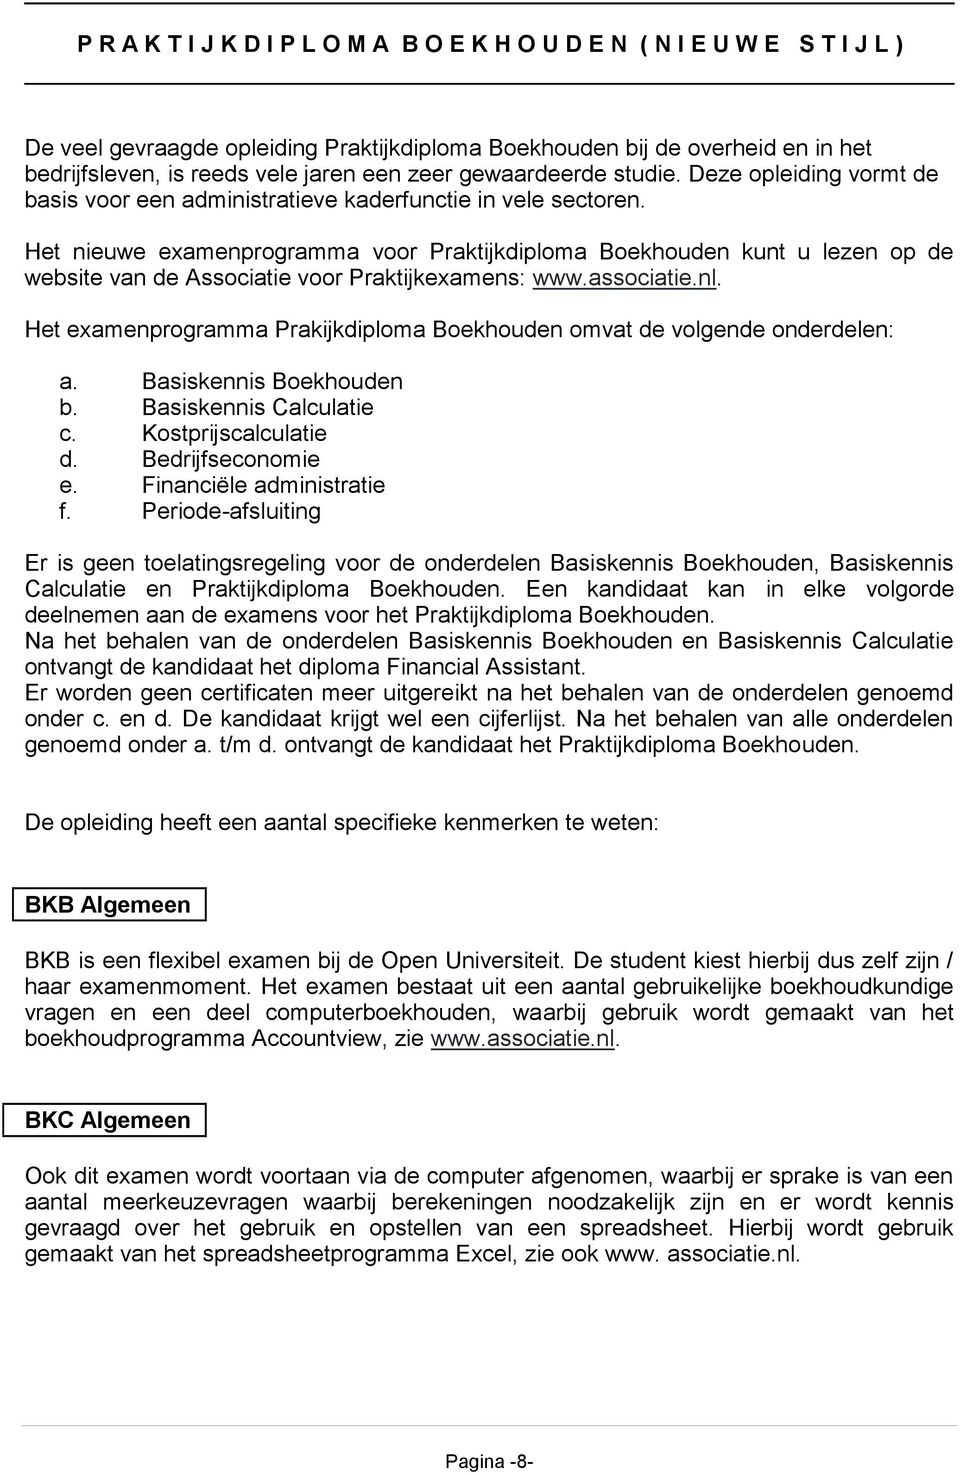 Het nieuwe examenprogramma voor Praktijkdiploma Boekhouden kunt u lezen op de website van de Associatie voor Praktijkexamens: www.associatie.nl.